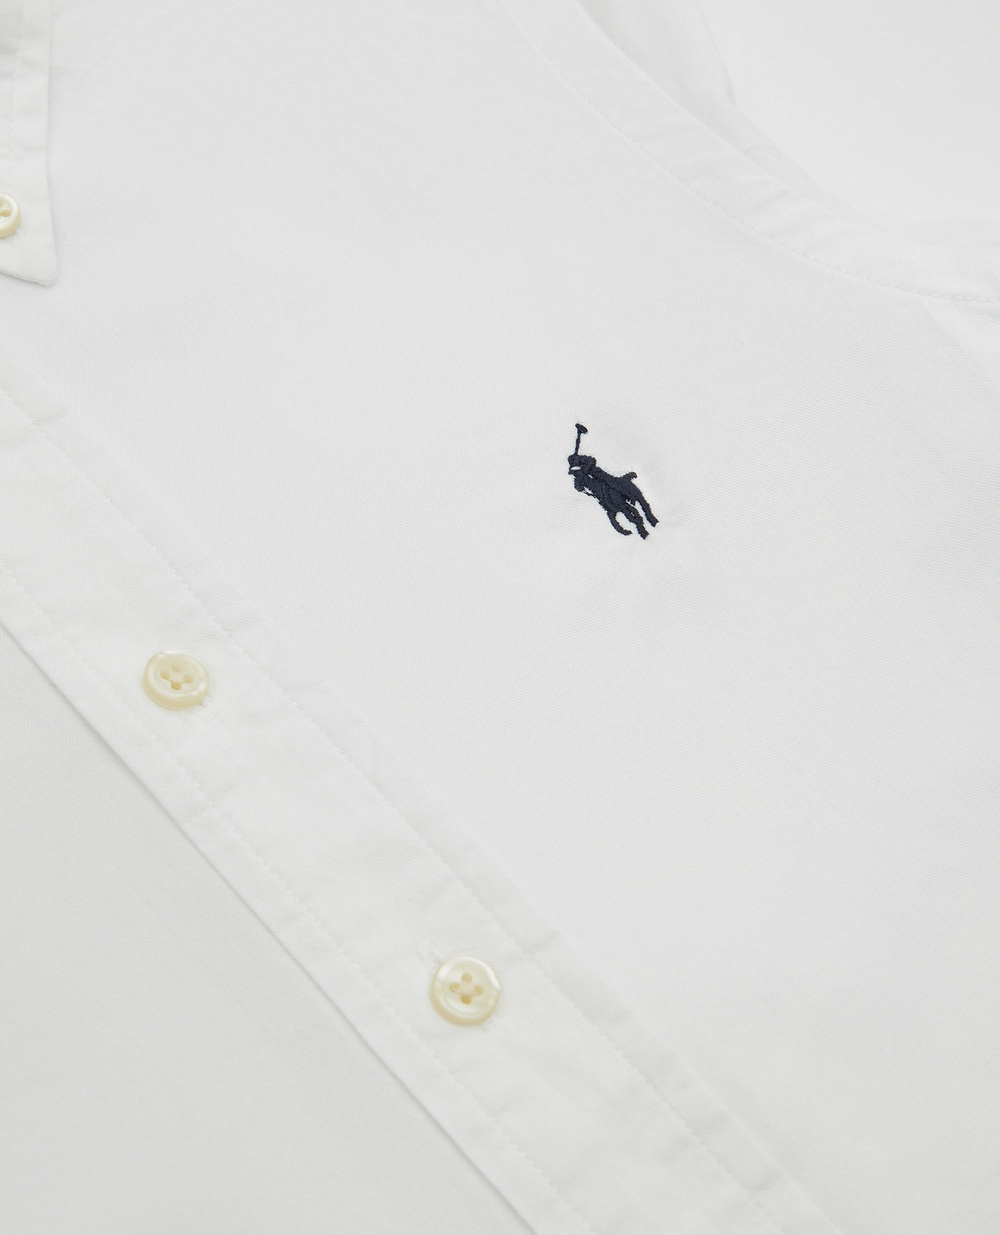 Детская рубашка Polo Ralph Lauren Kids 323819238001, белый цвет • Купить в интернет-магазине Kameron